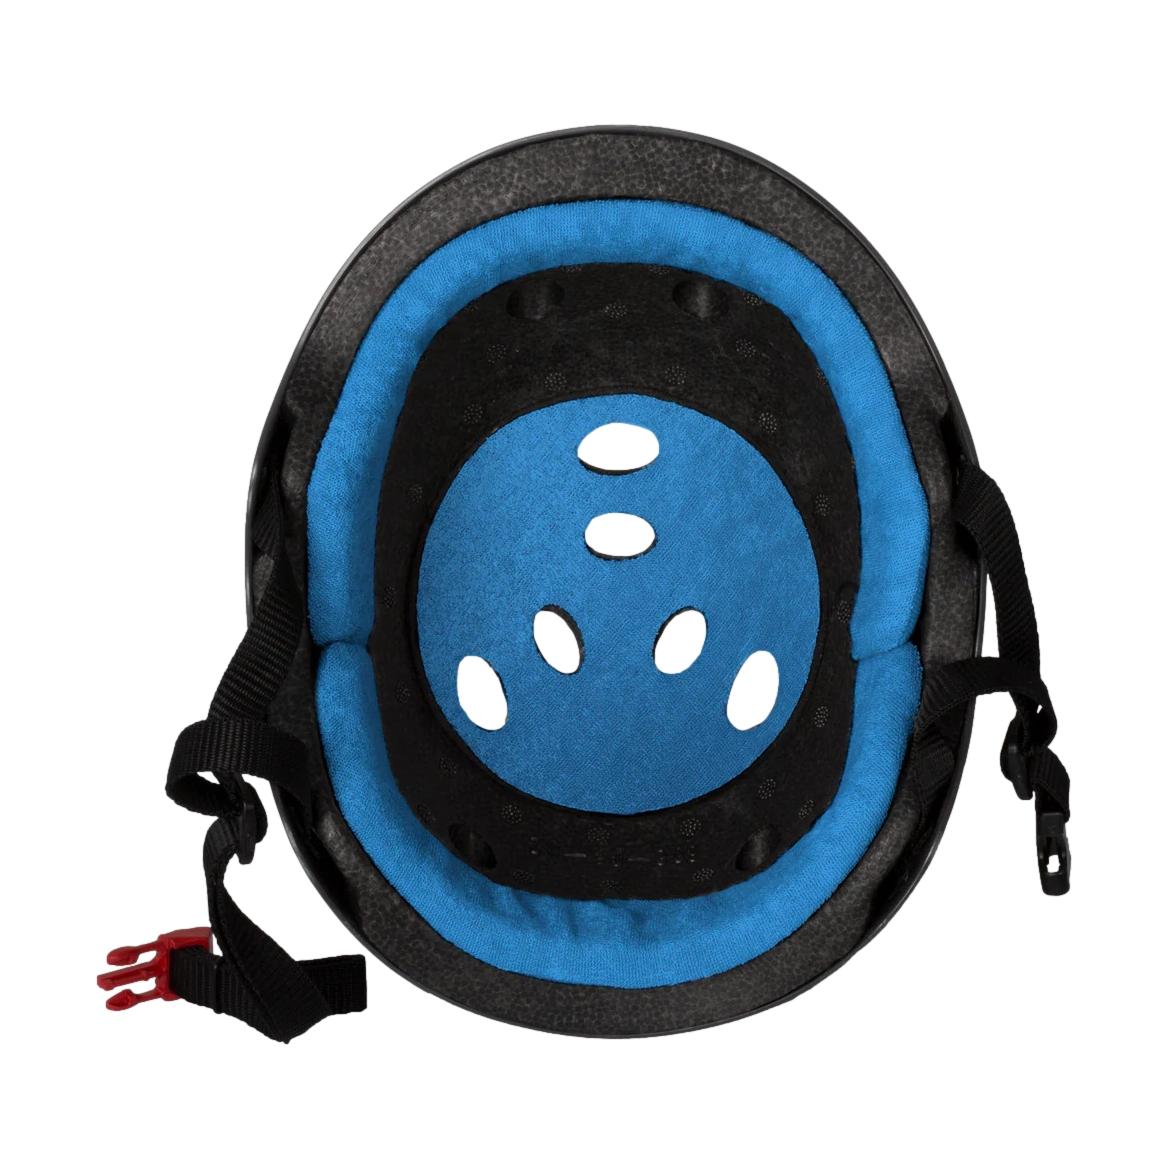 T8 Certified Sweatsaver Gloss Black/Blue Helmet - Venue Skateboards